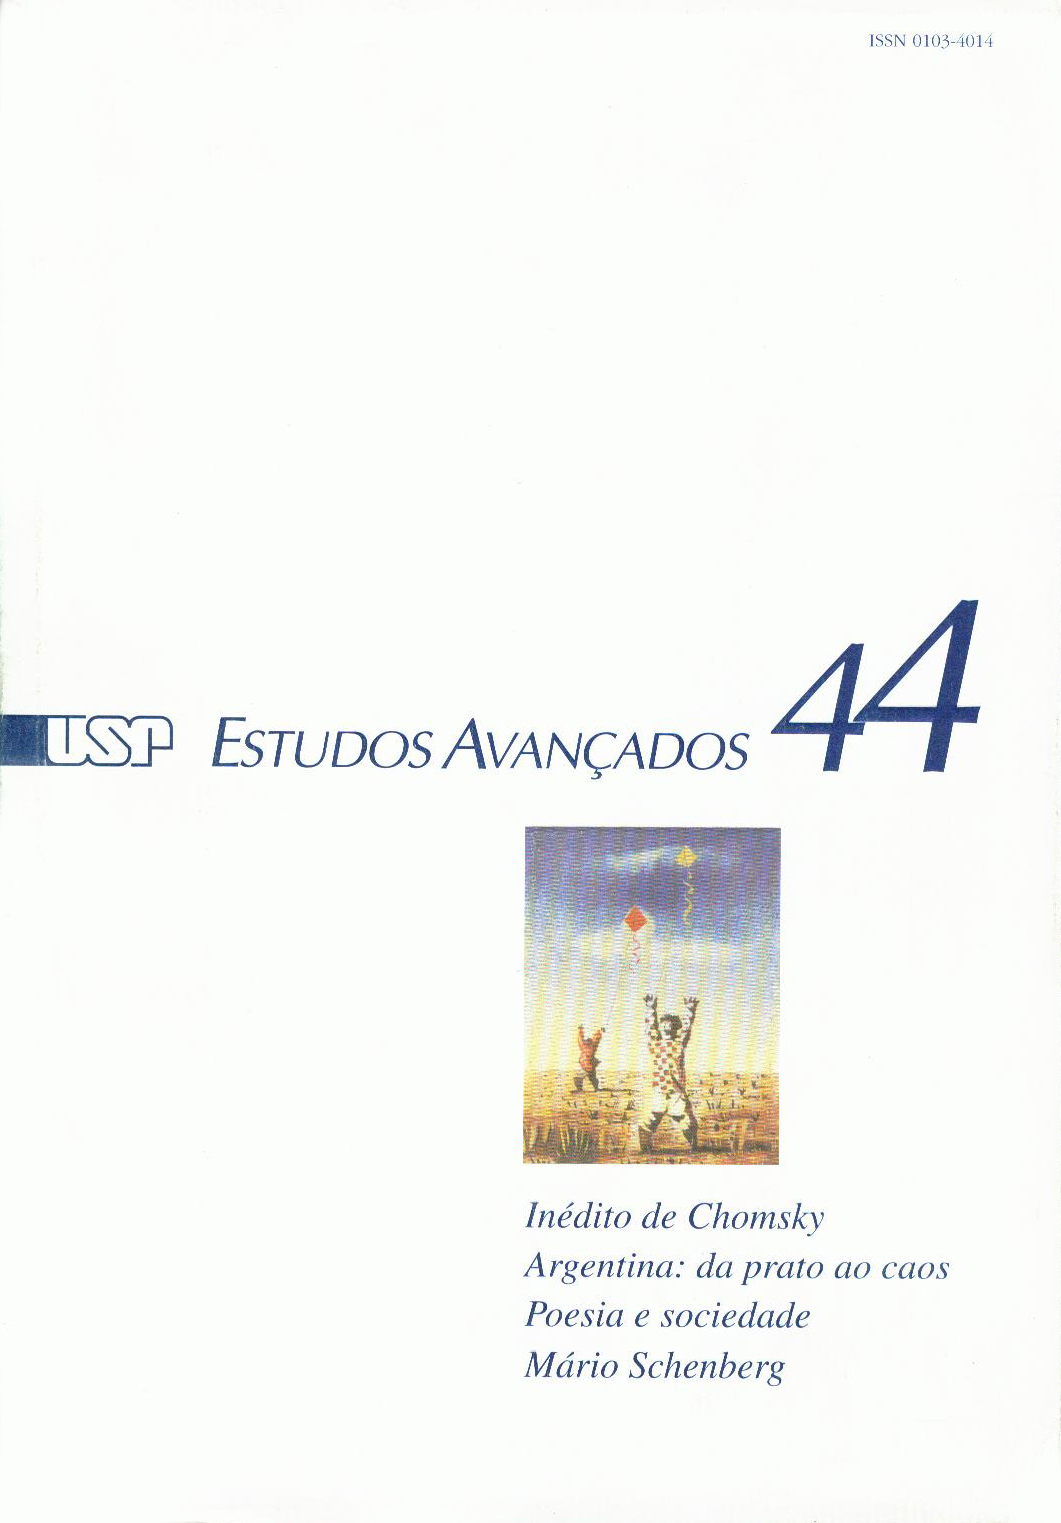 					Ver Vol. 16 Núm. 44 (2002)
				